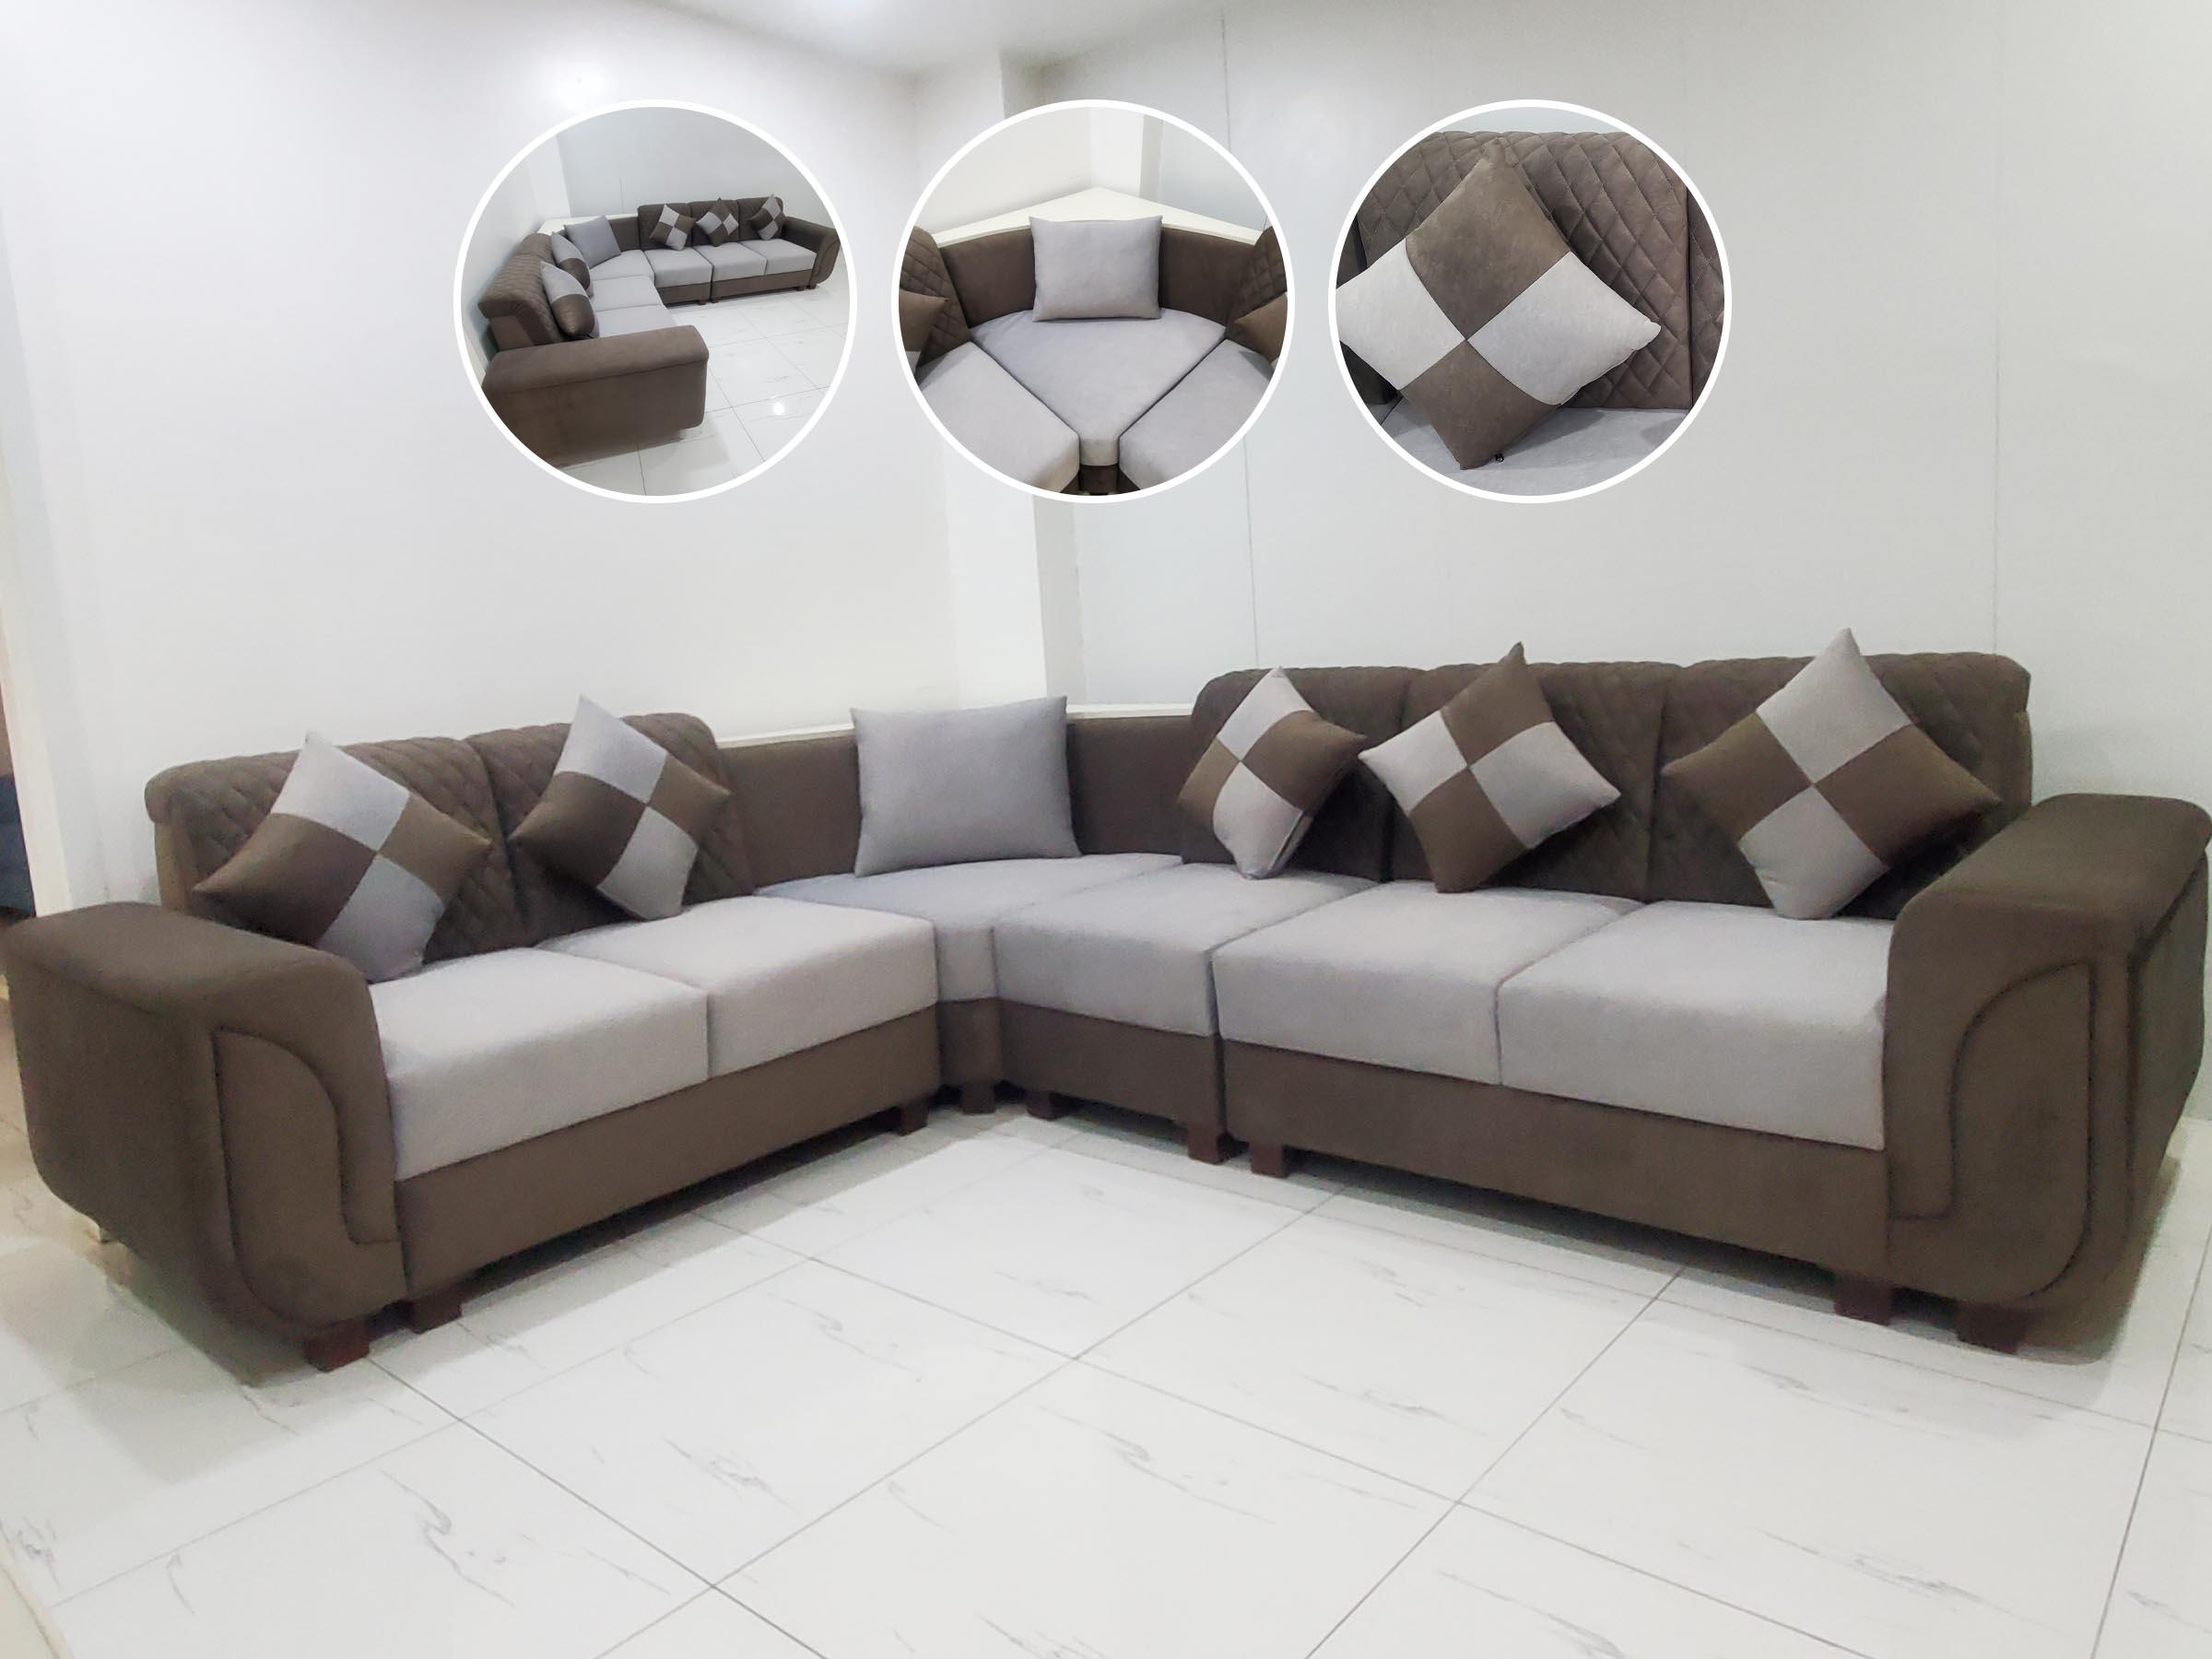 L-shaped corner sofa